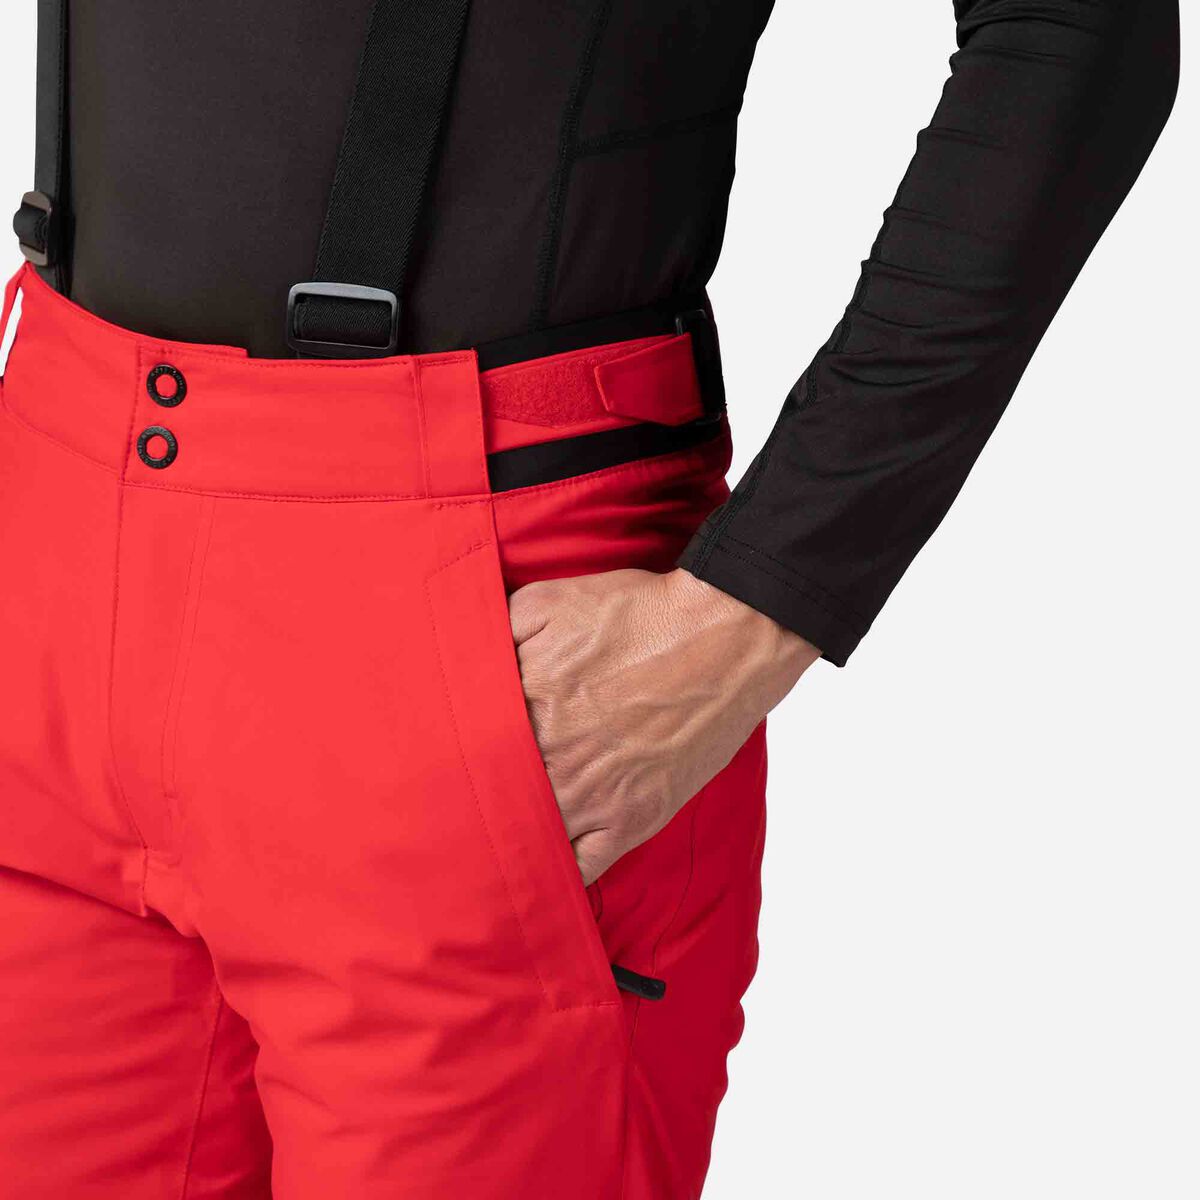 Pantalon de ski Homme